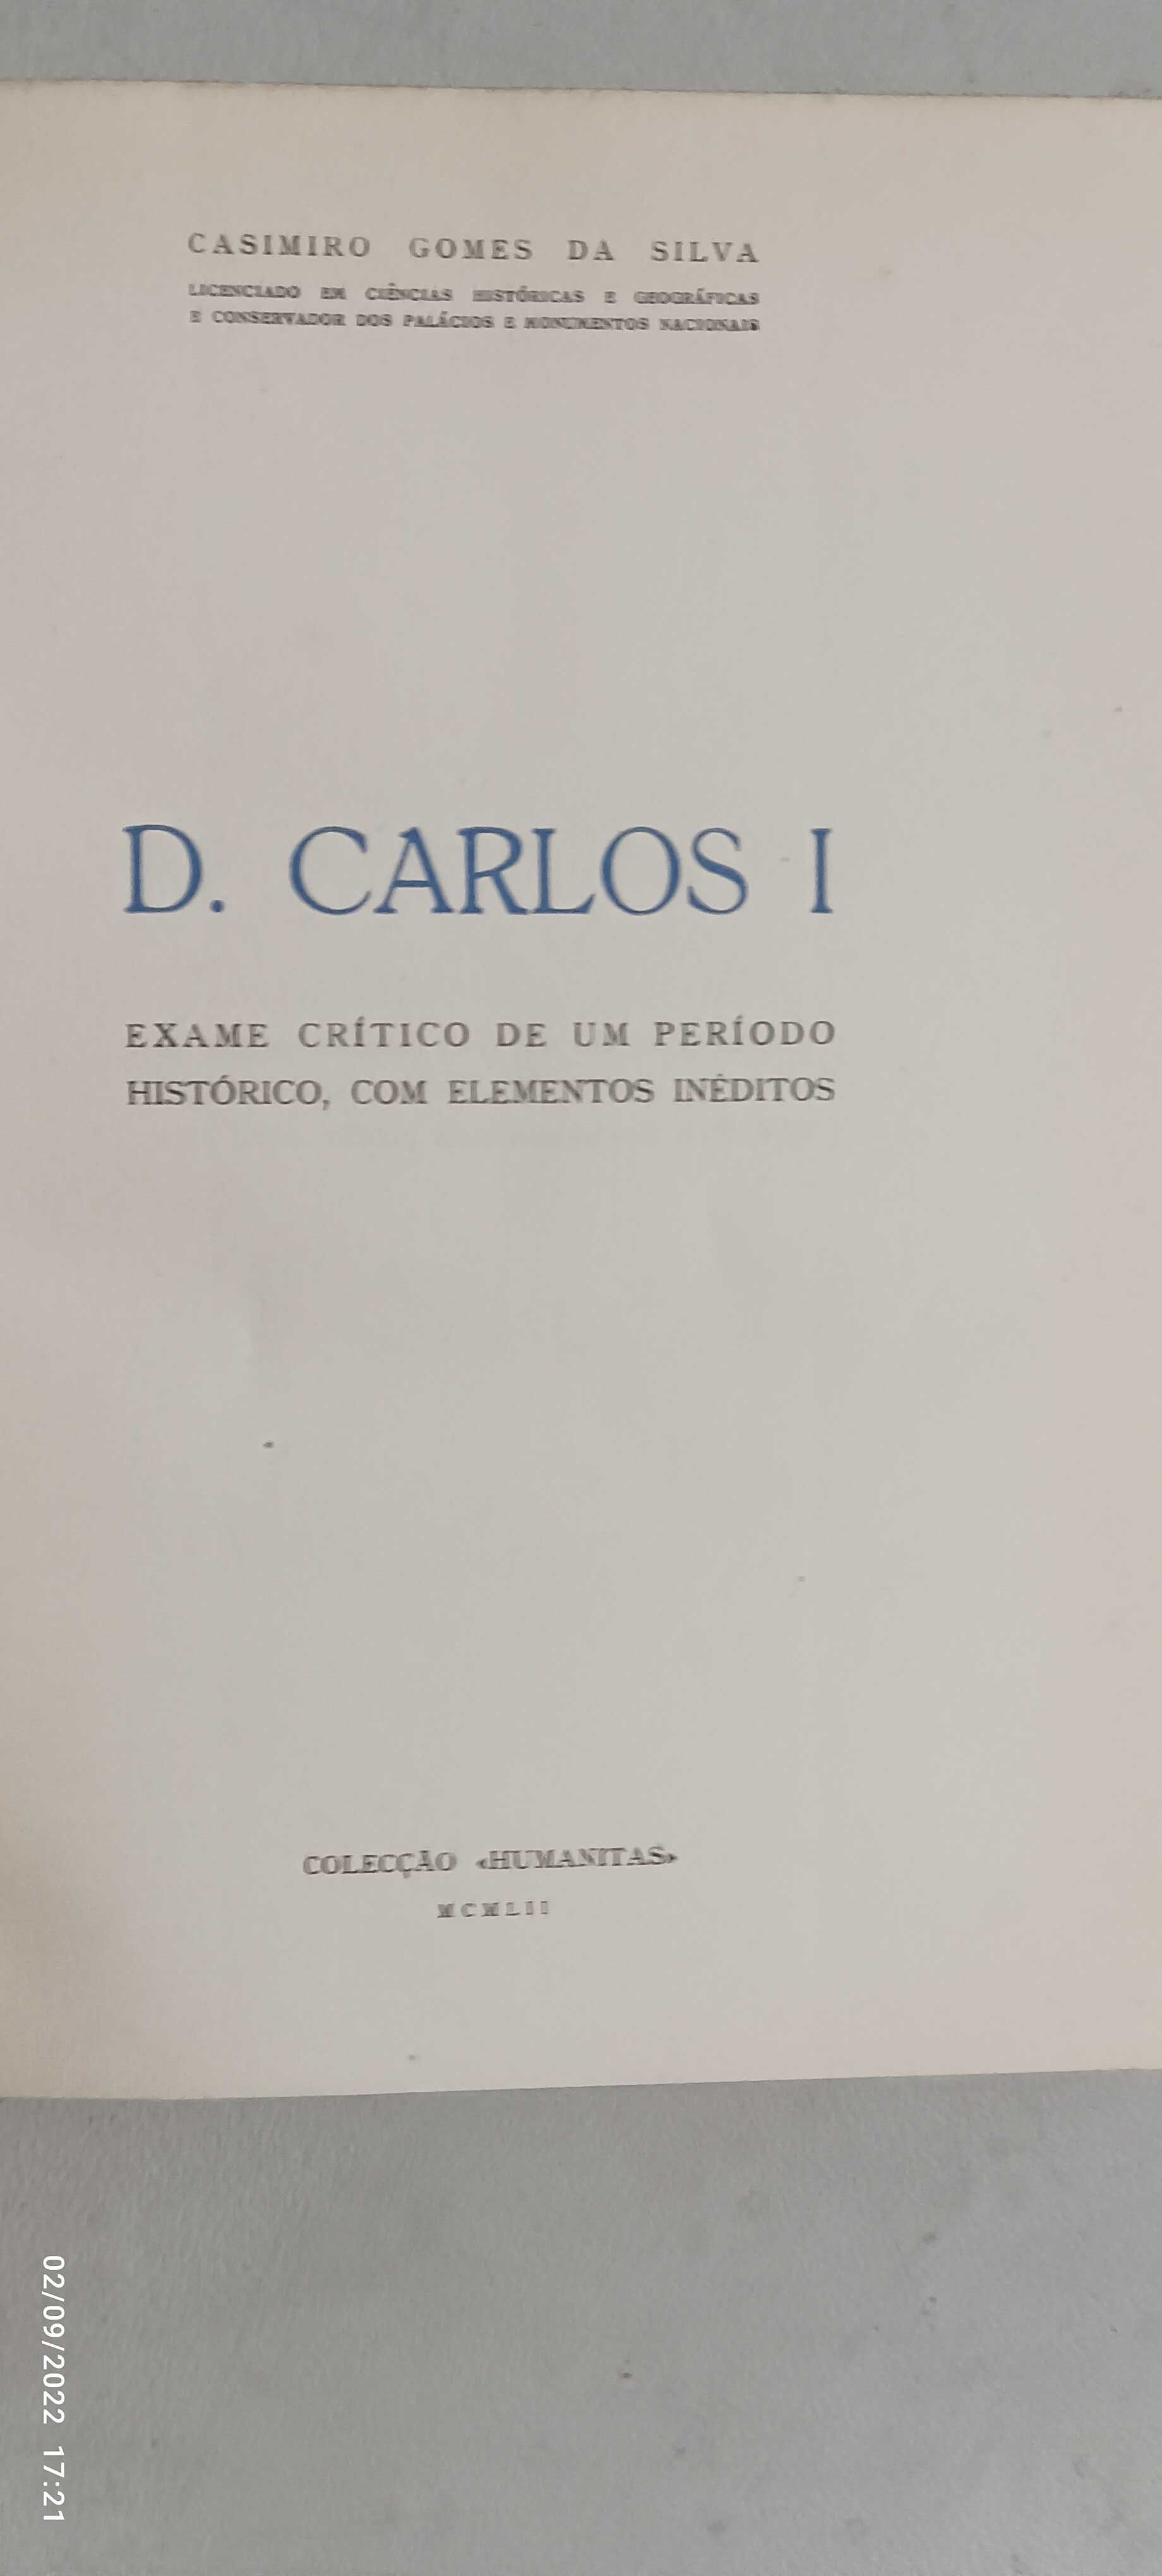 Livro PA-4 - Casimiro Gomes Da Silva - D. Carlos 1